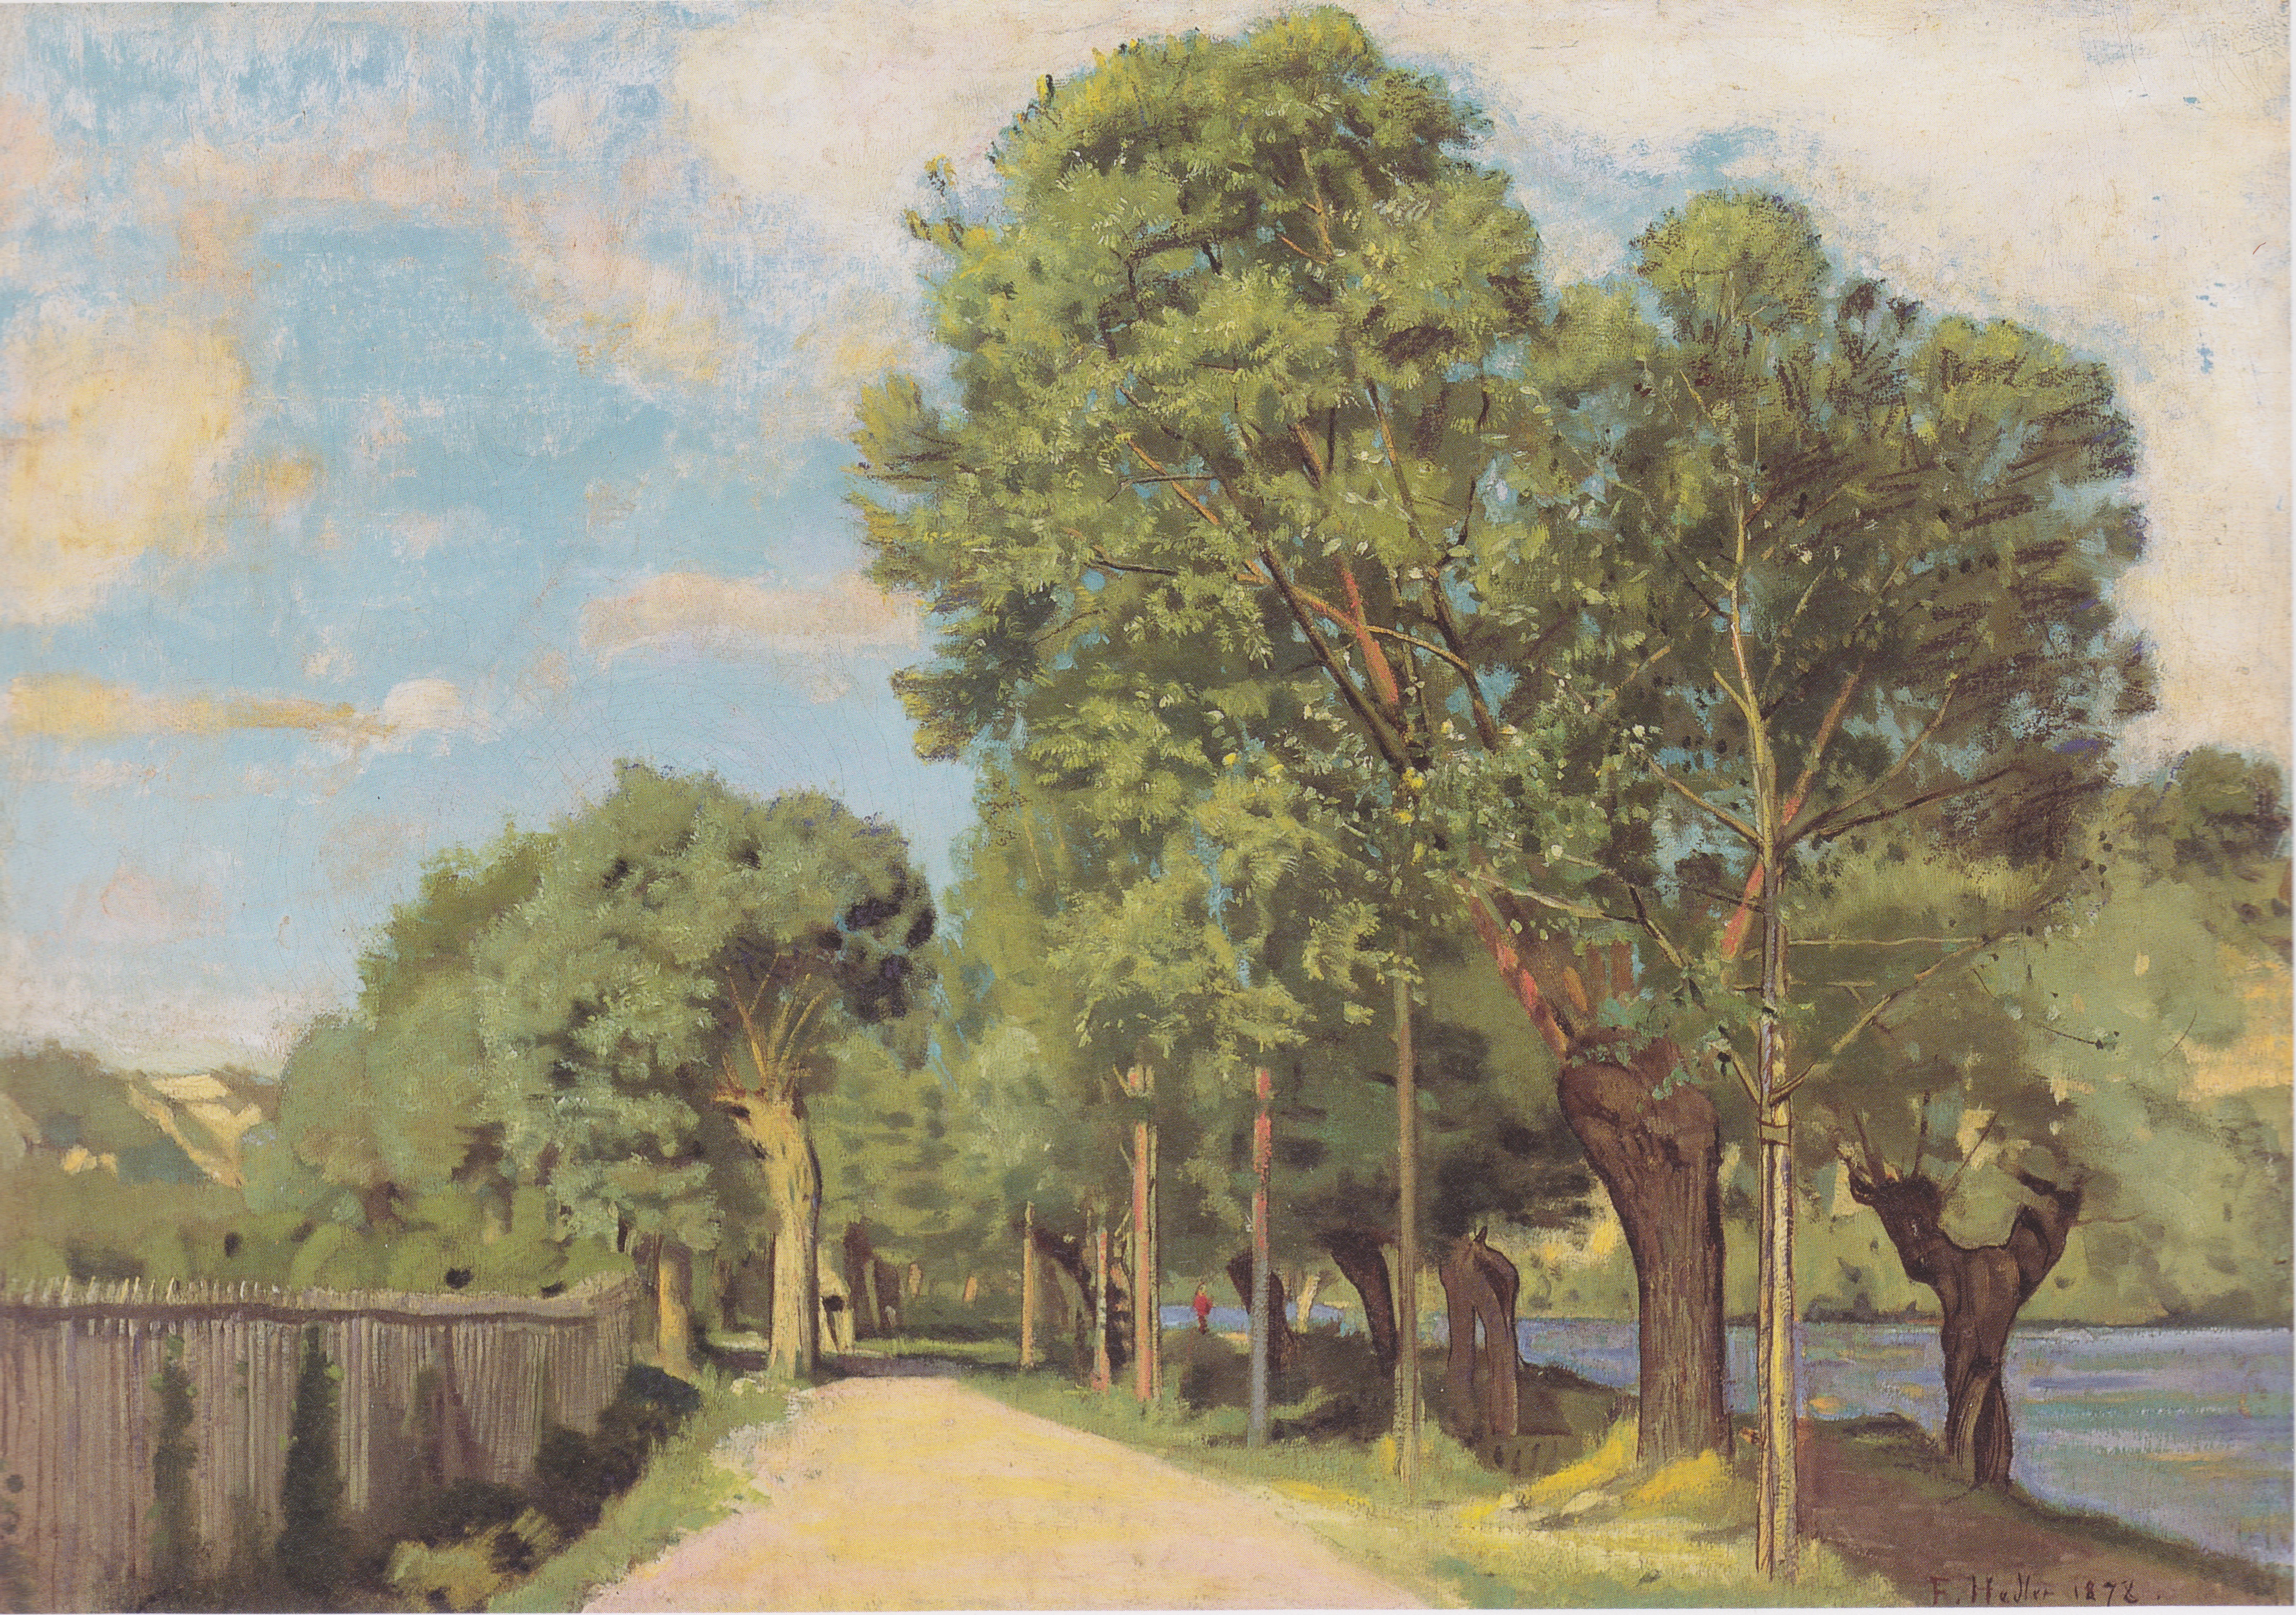 FERDINAND HODLER, FIGURE DE LA PEINTURE SUISSE Landscape-at-the-jonction-at-geneva-1878